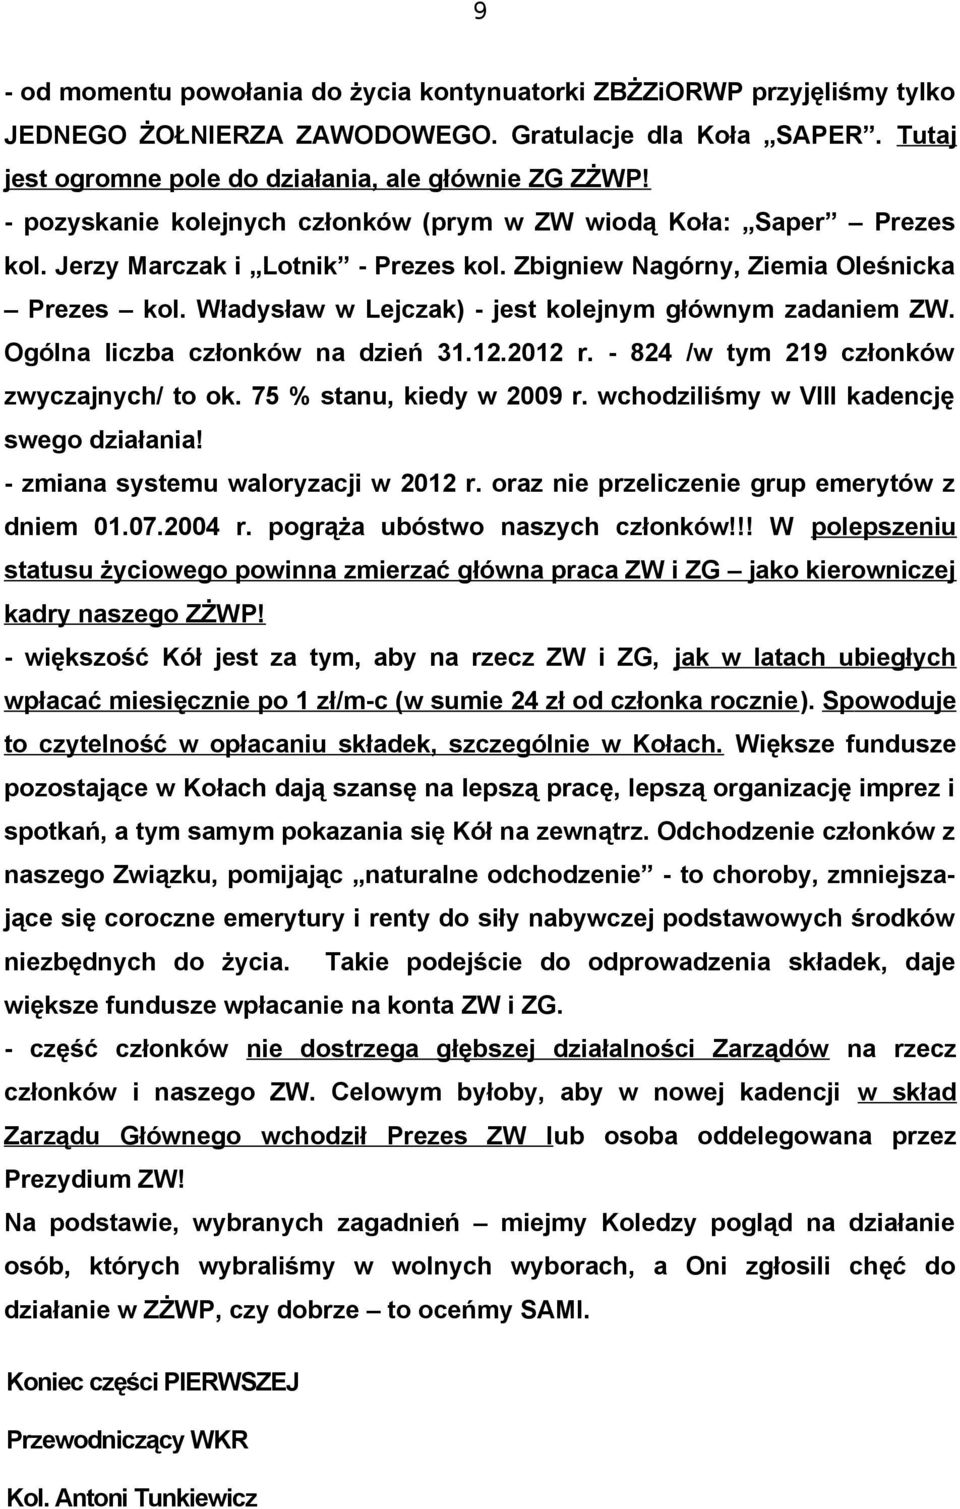 Władysław w Lejczak) - jest kolejnym głównym zadaniem ZW. Ogólna liczba członków na dzień 31.12.2012 r. - 824 /w tym 219 członków zwyczajnych/ to ok. 75 % stanu, kiedy w 2009 r.